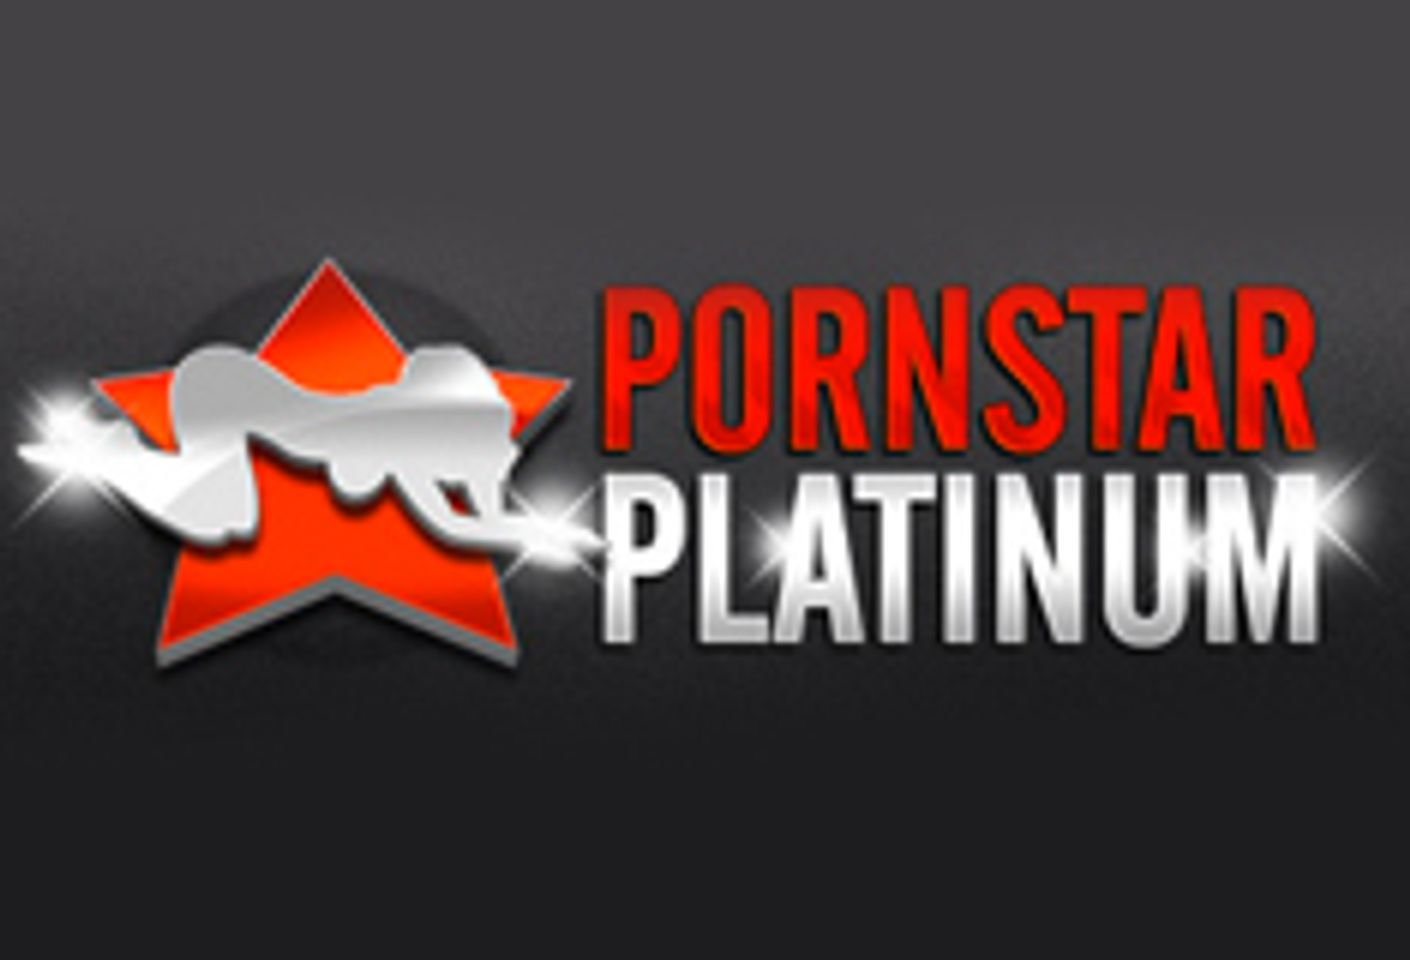 Pornstar Platinum Launches TrinityStClair.com